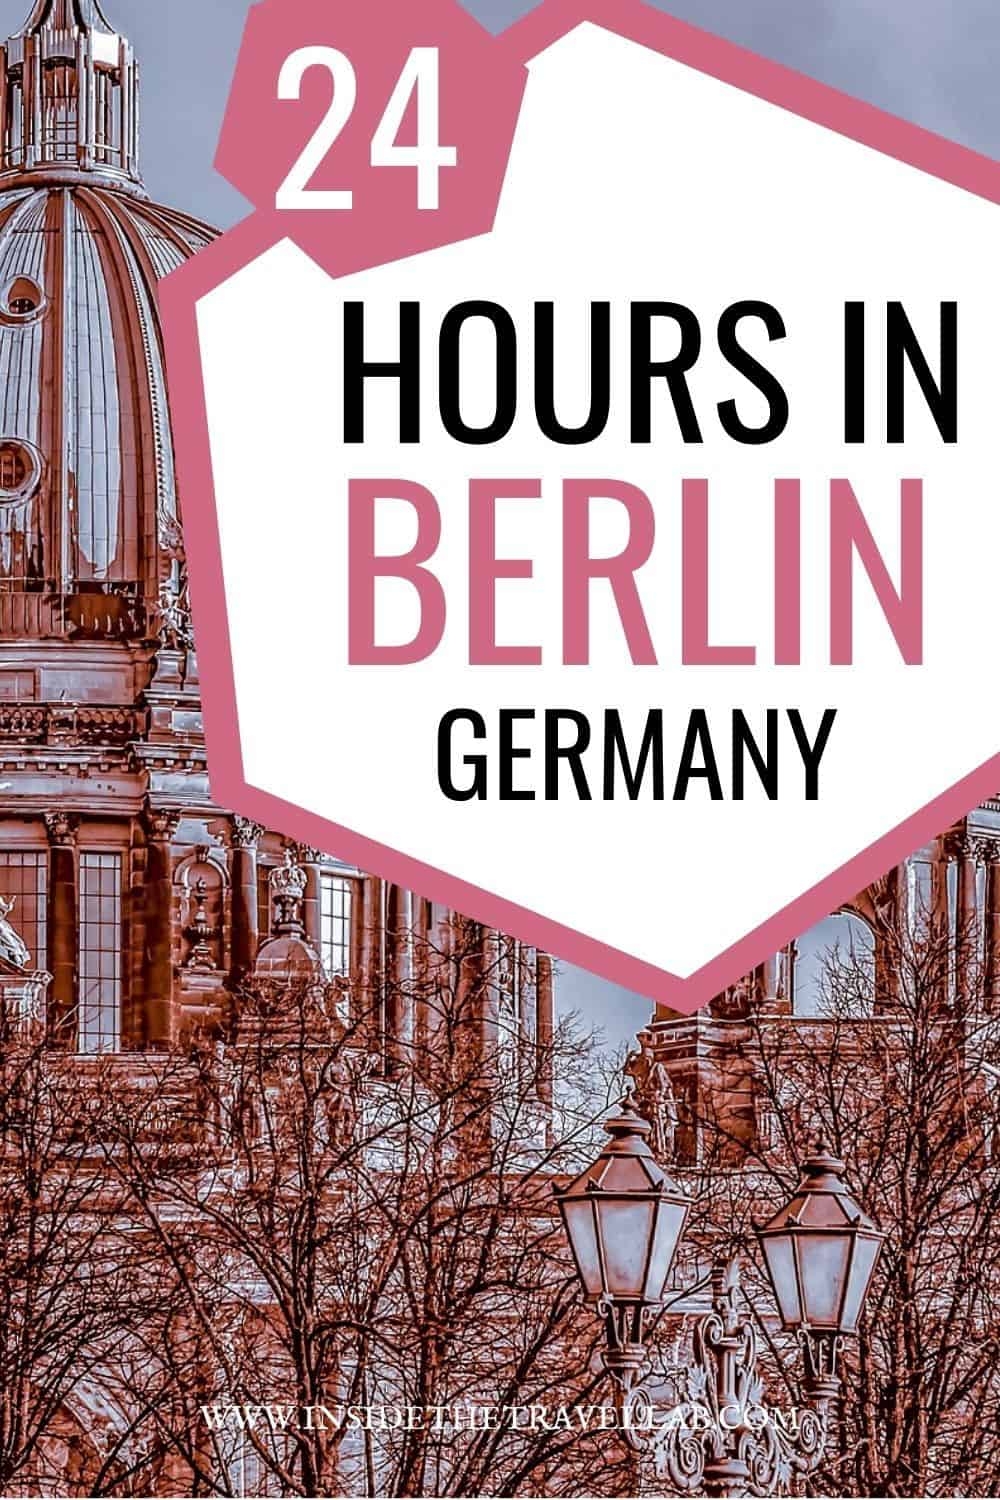 24 Hours in Berlin Germany